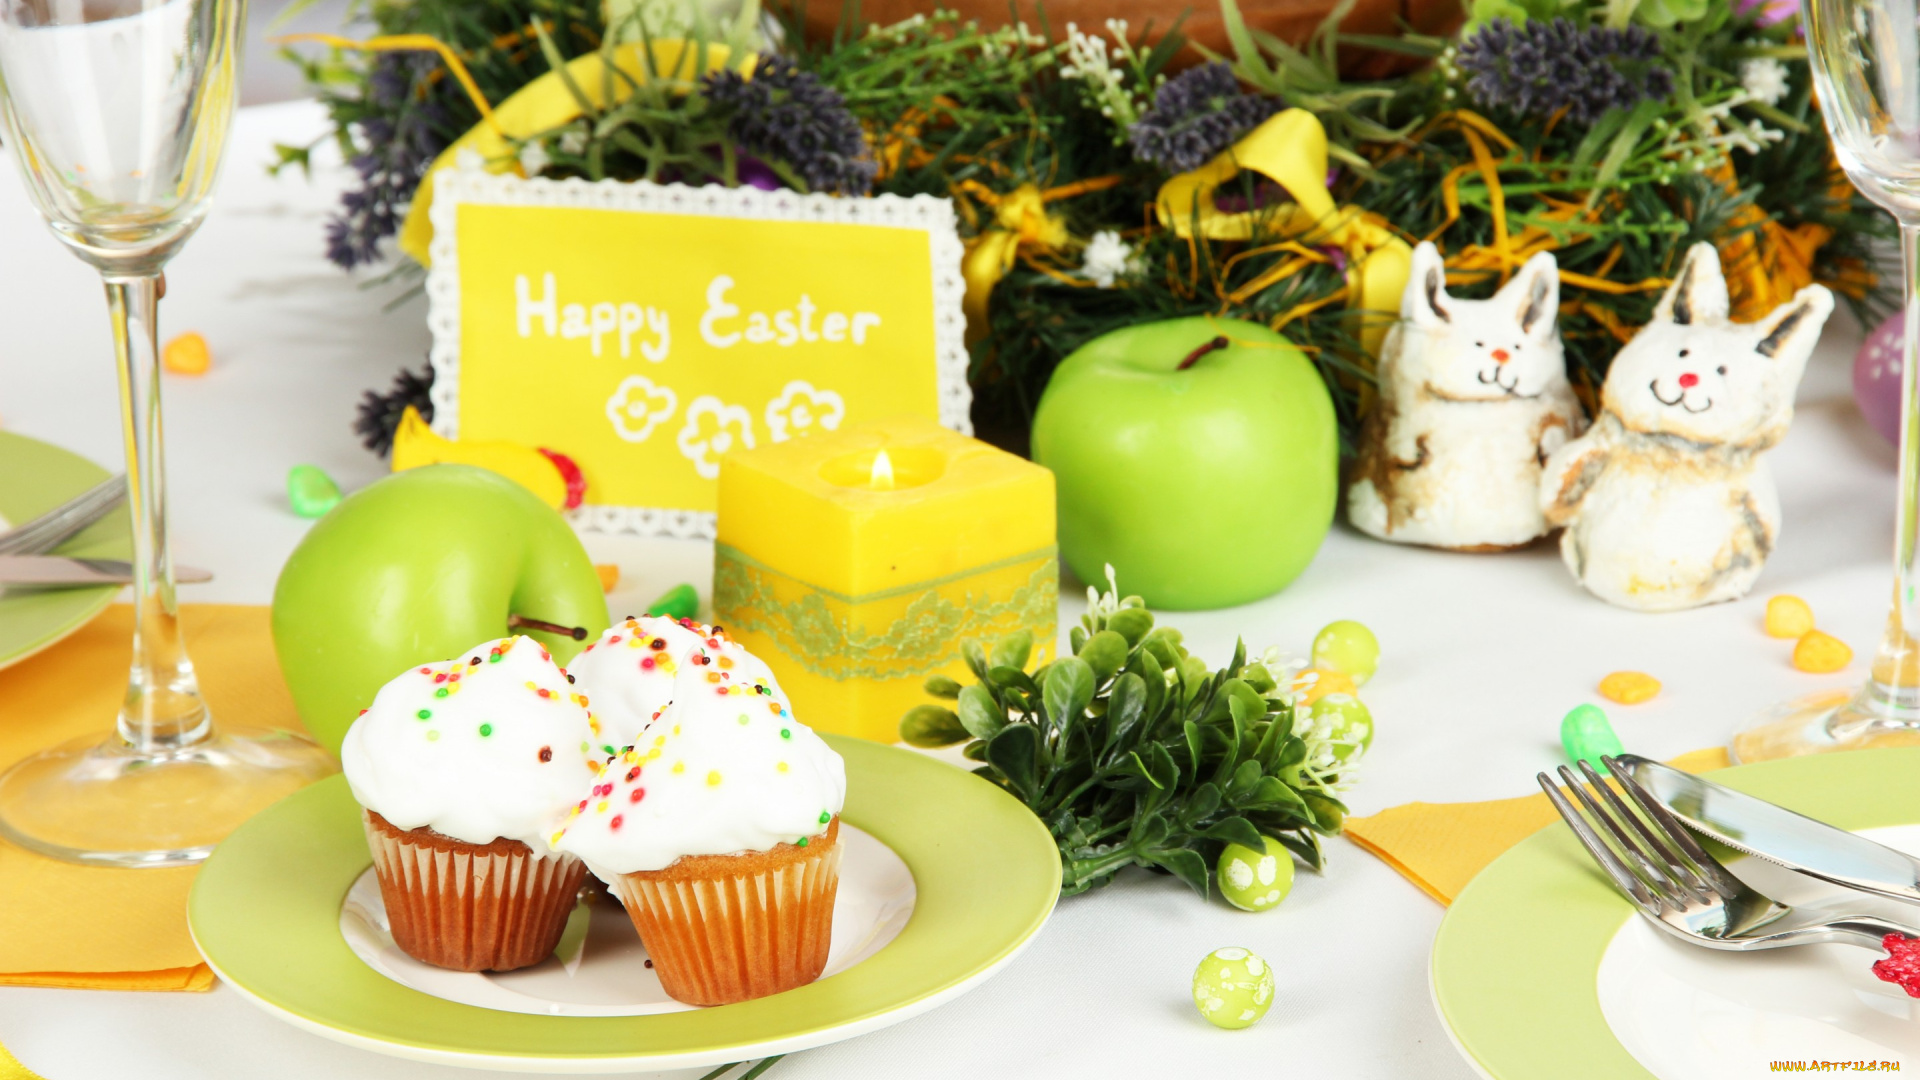 праздничные, пасха, cake, flowers, eggs, кулич, blessed, holiday, стол, цветы, яйца, easter